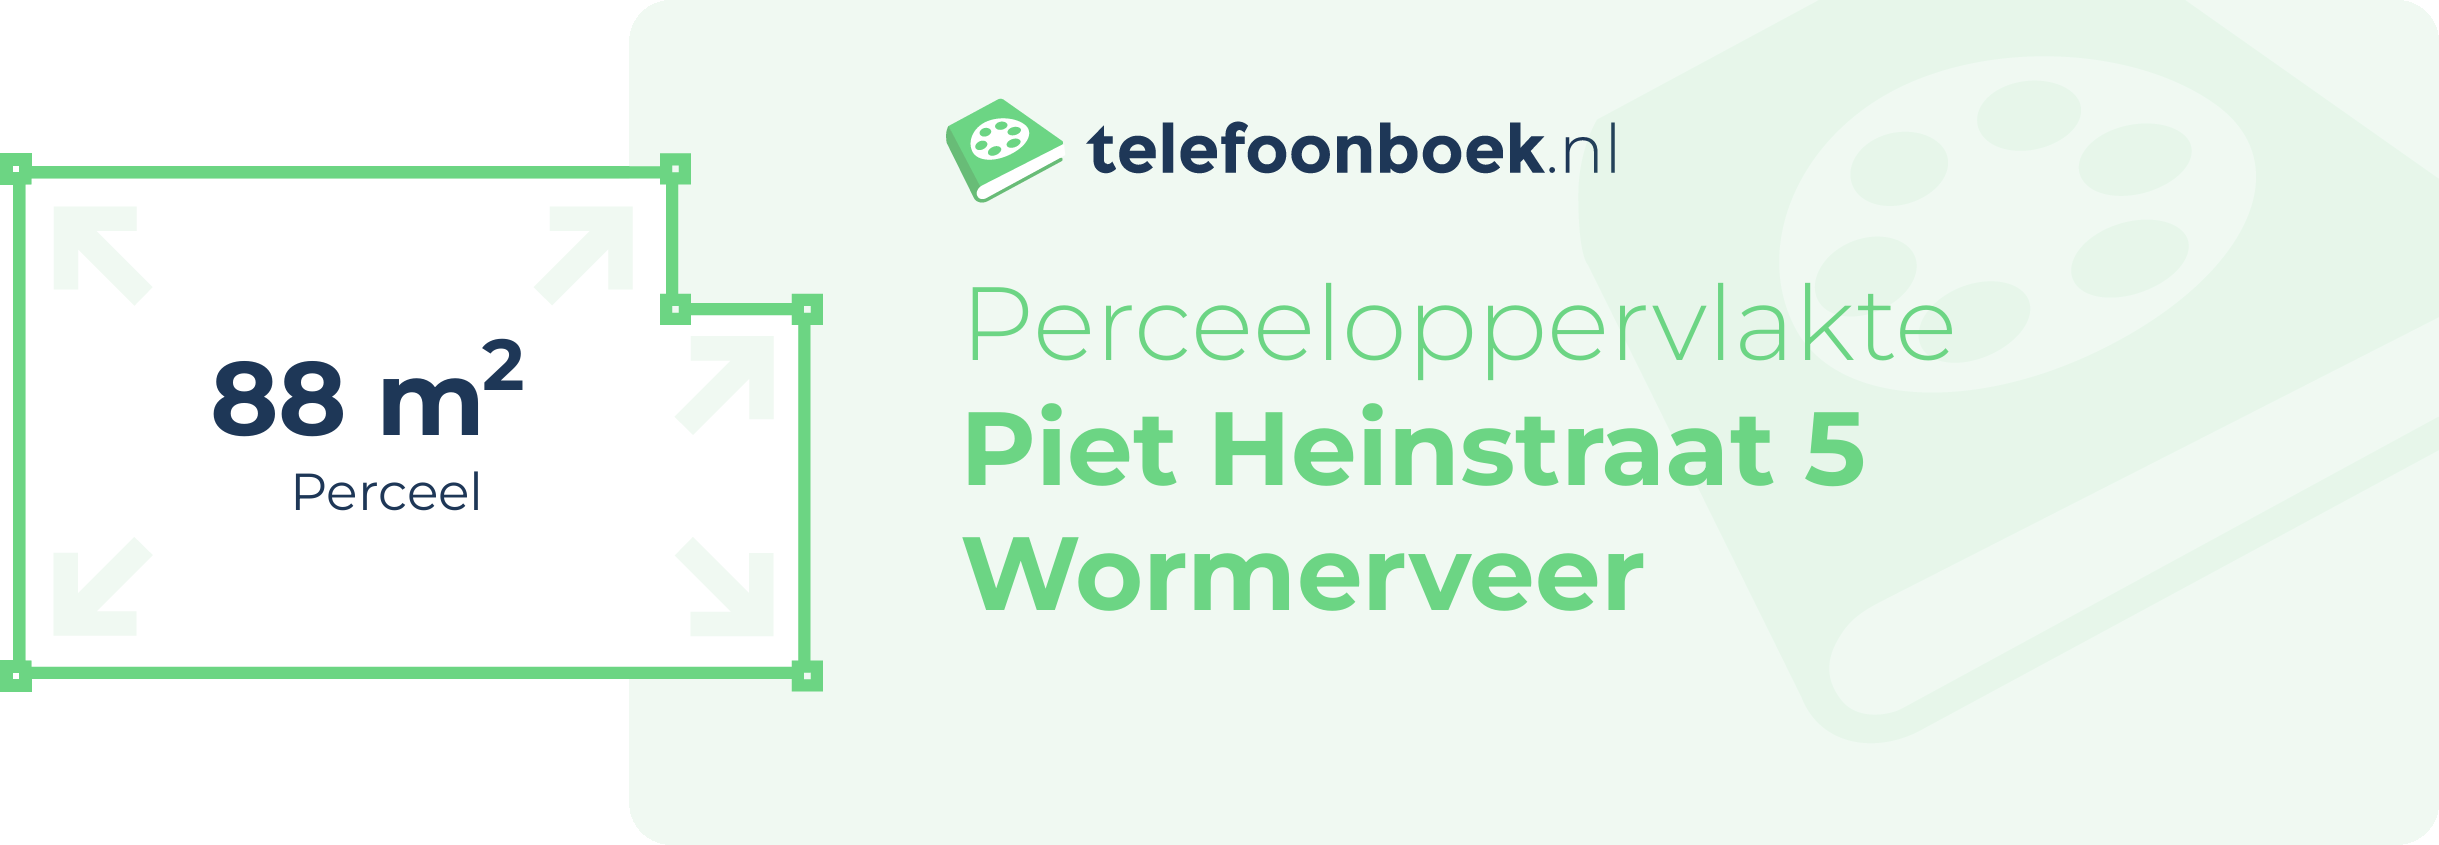 Perceeloppervlakte Piet Heinstraat 5 Wormerveer